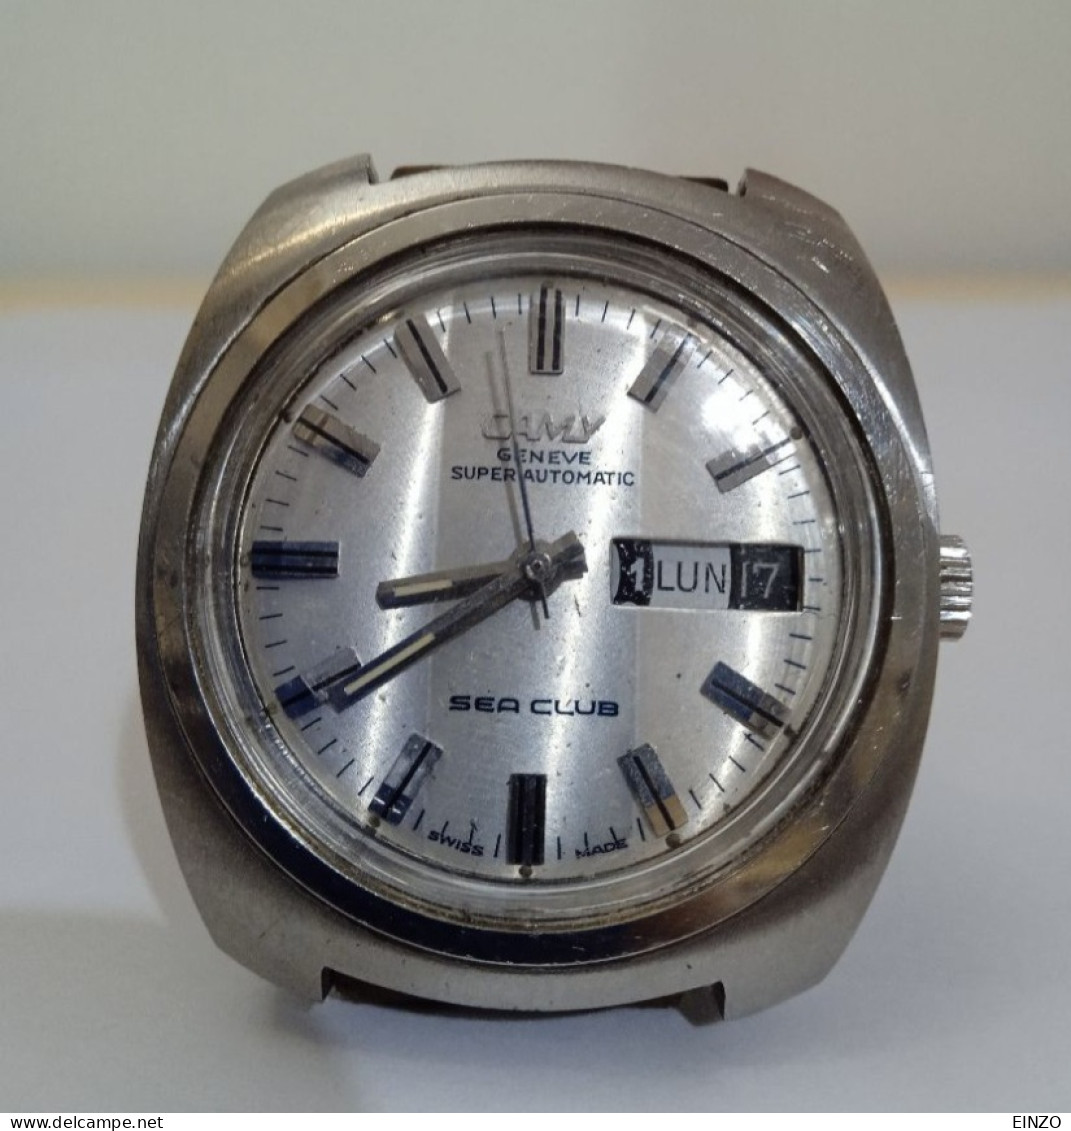 VINTAGE MONTRE CAMY GENÈVE Super Automatique SEA CLUB - Watches: Old